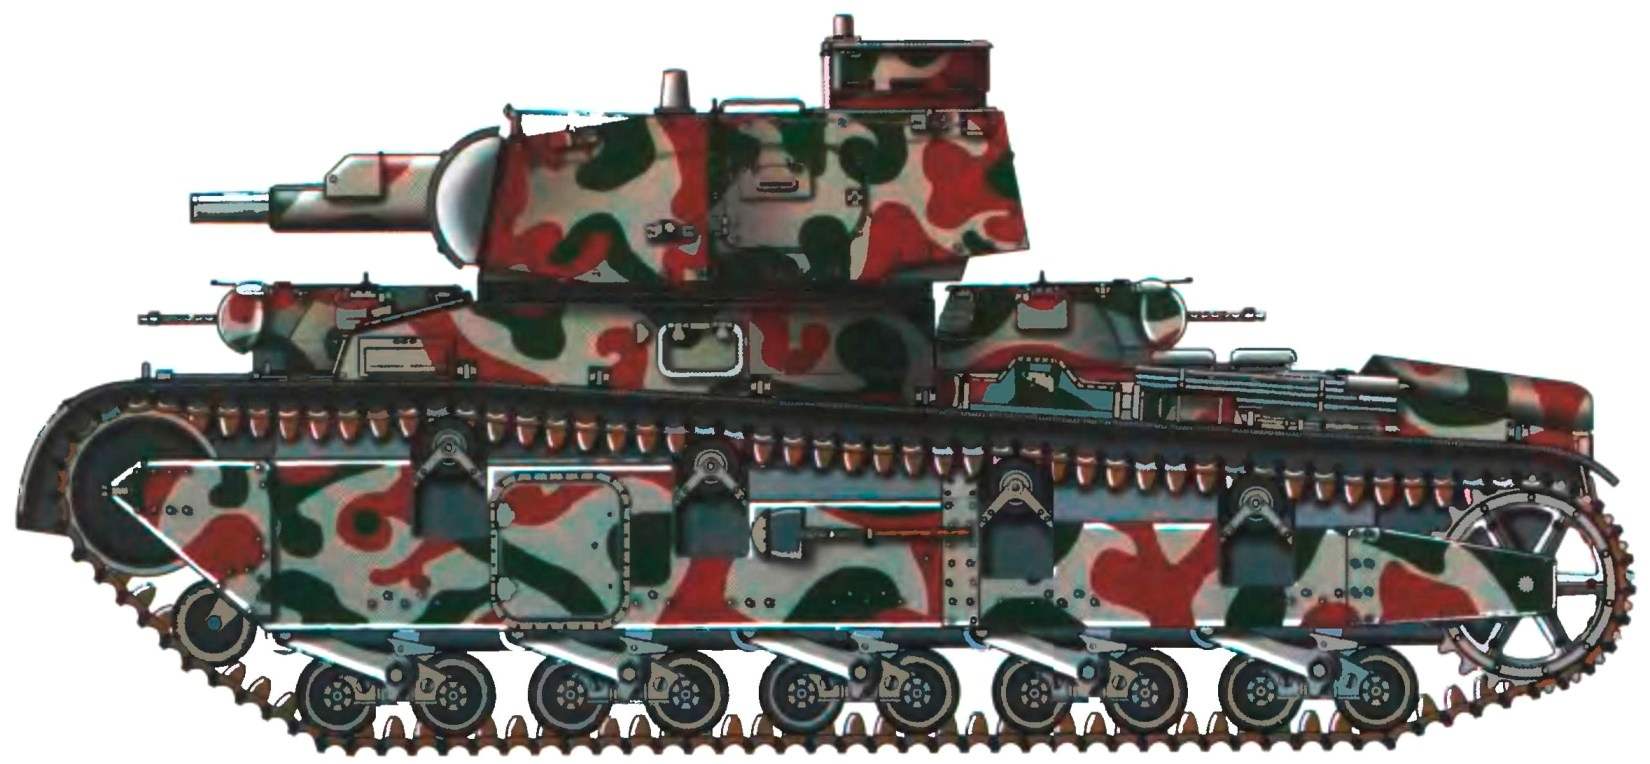 Второй прототип танка Nb.Fz. в камуфляжной окраске по состоянию на 1938 год